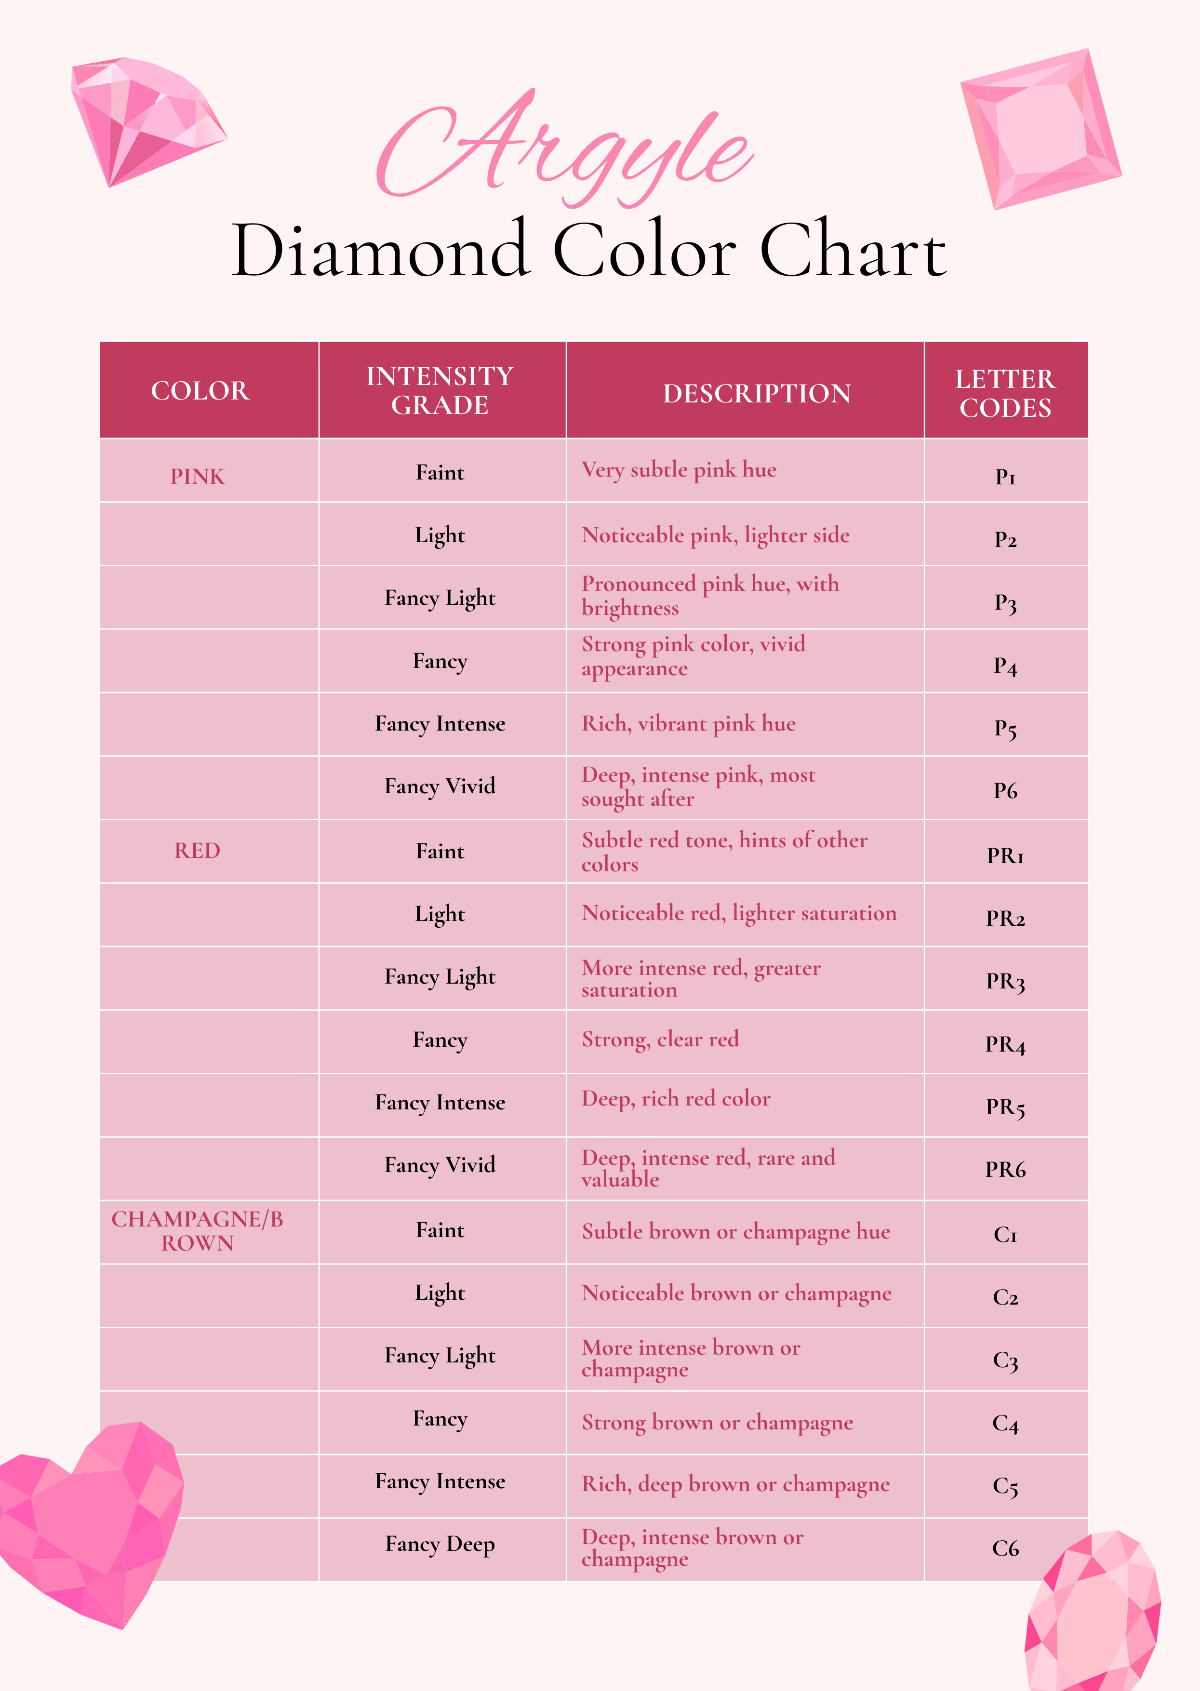 Argyle Diamond Color Chart